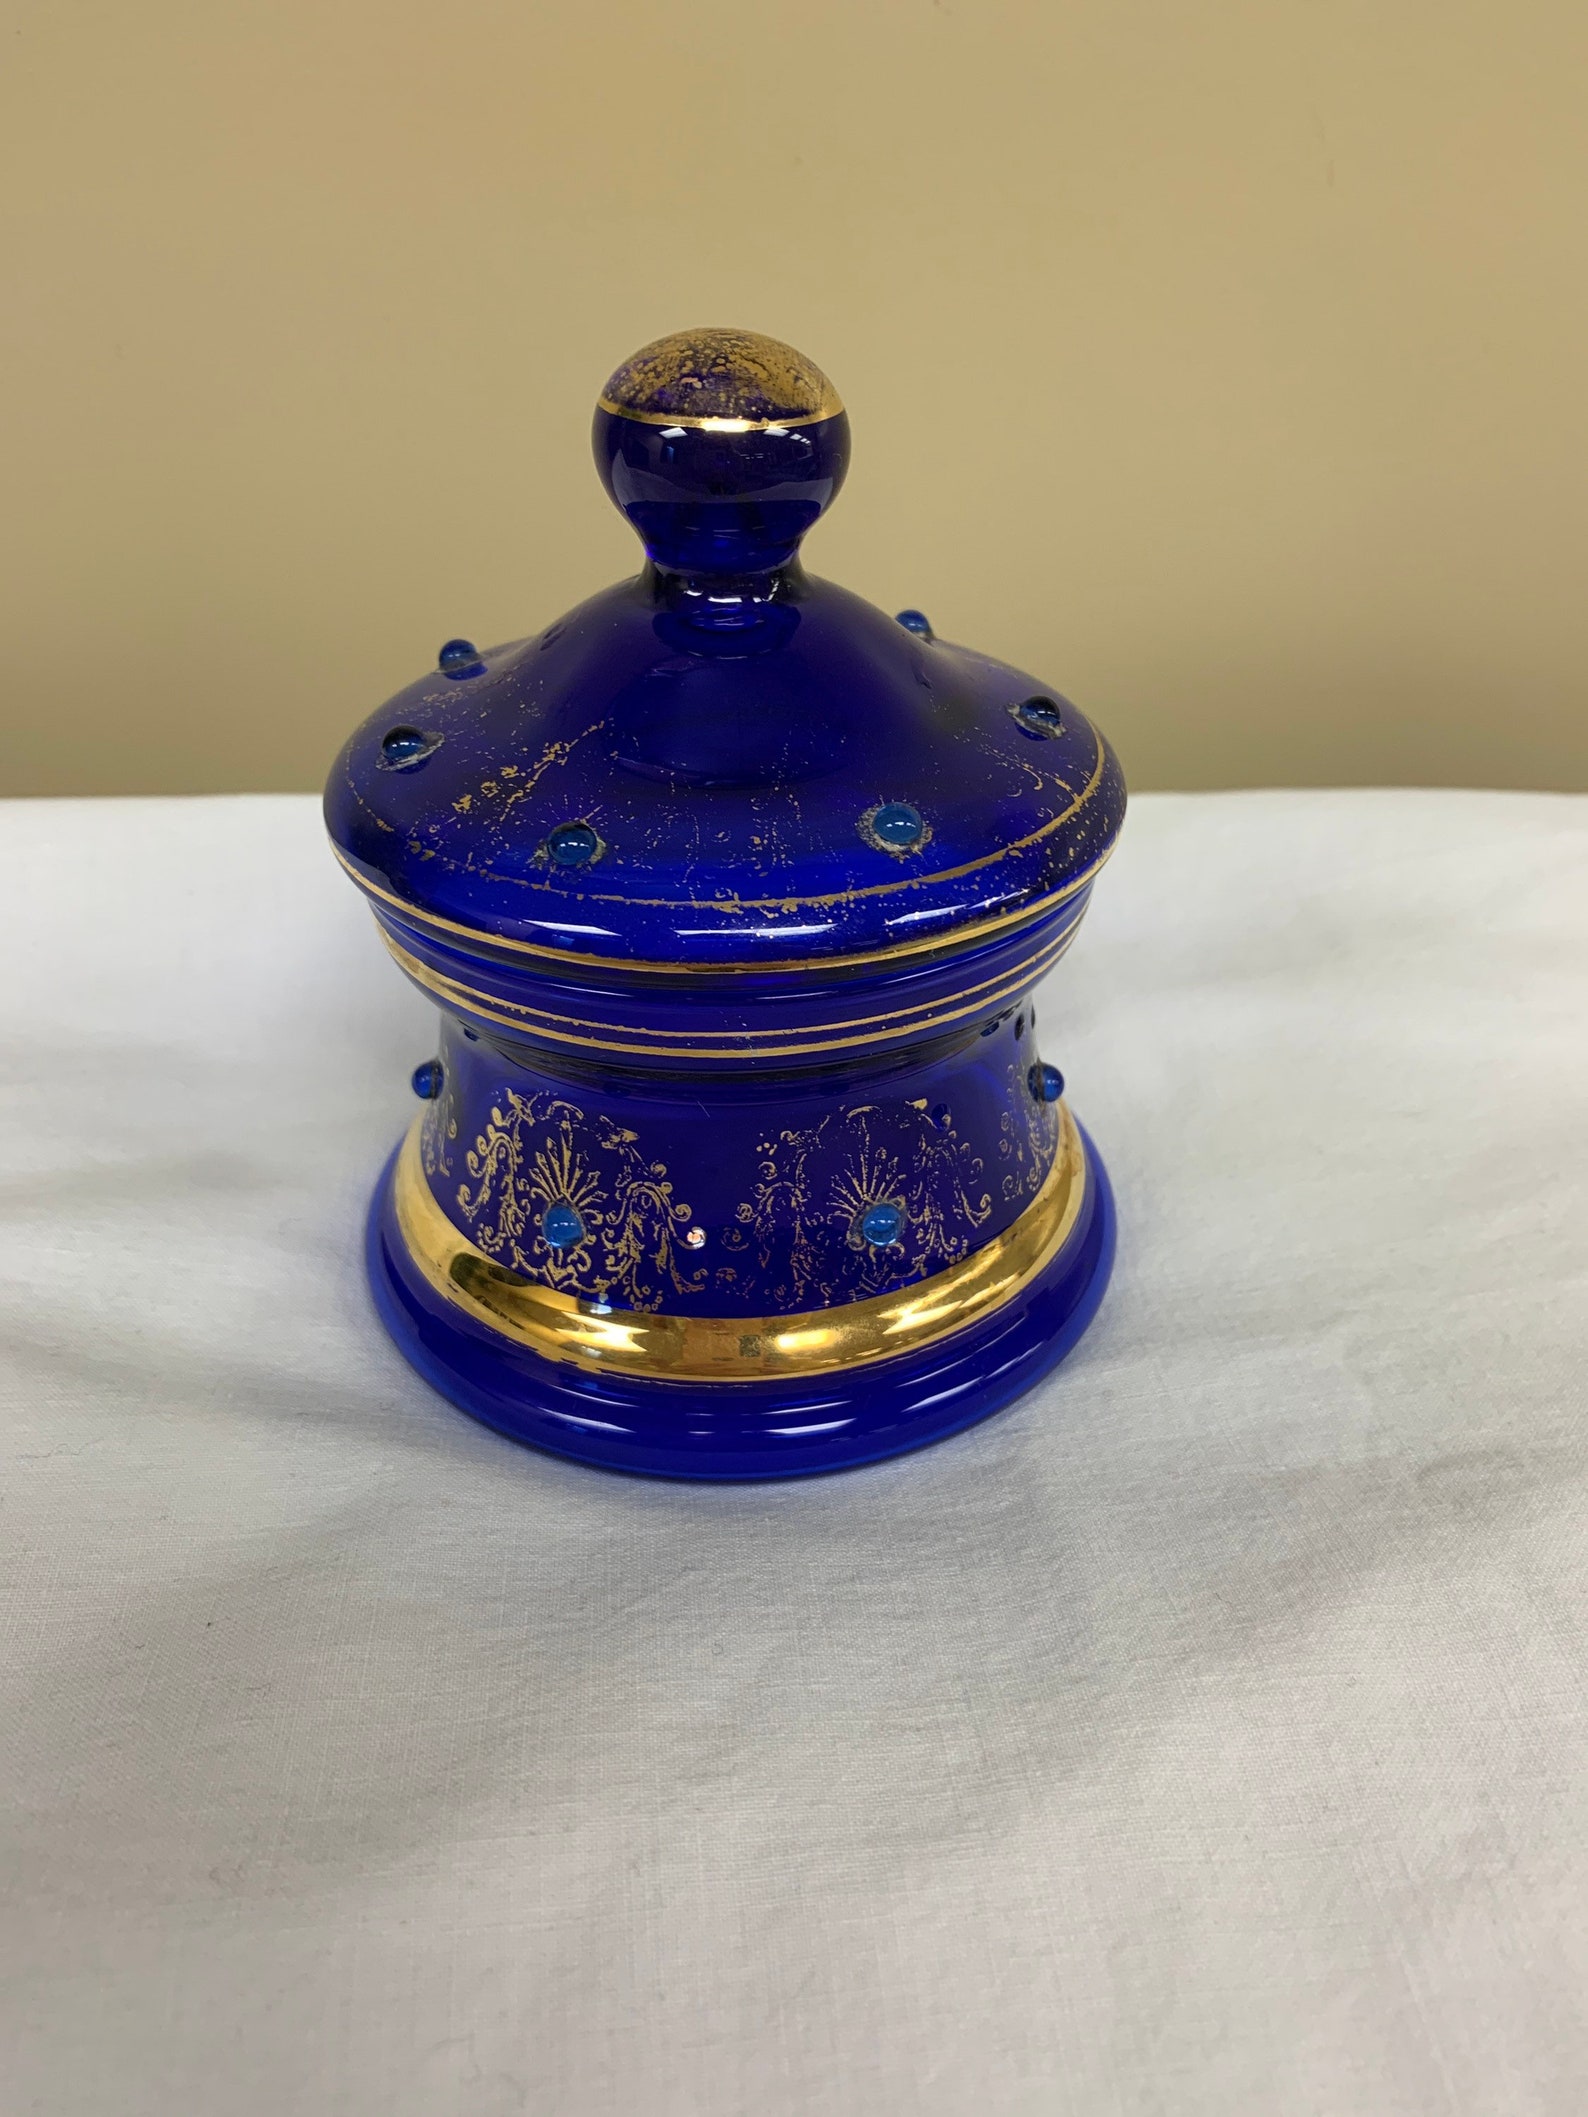 Vintage antique cobalt blue glass jar with lid trinket dish | Etsy